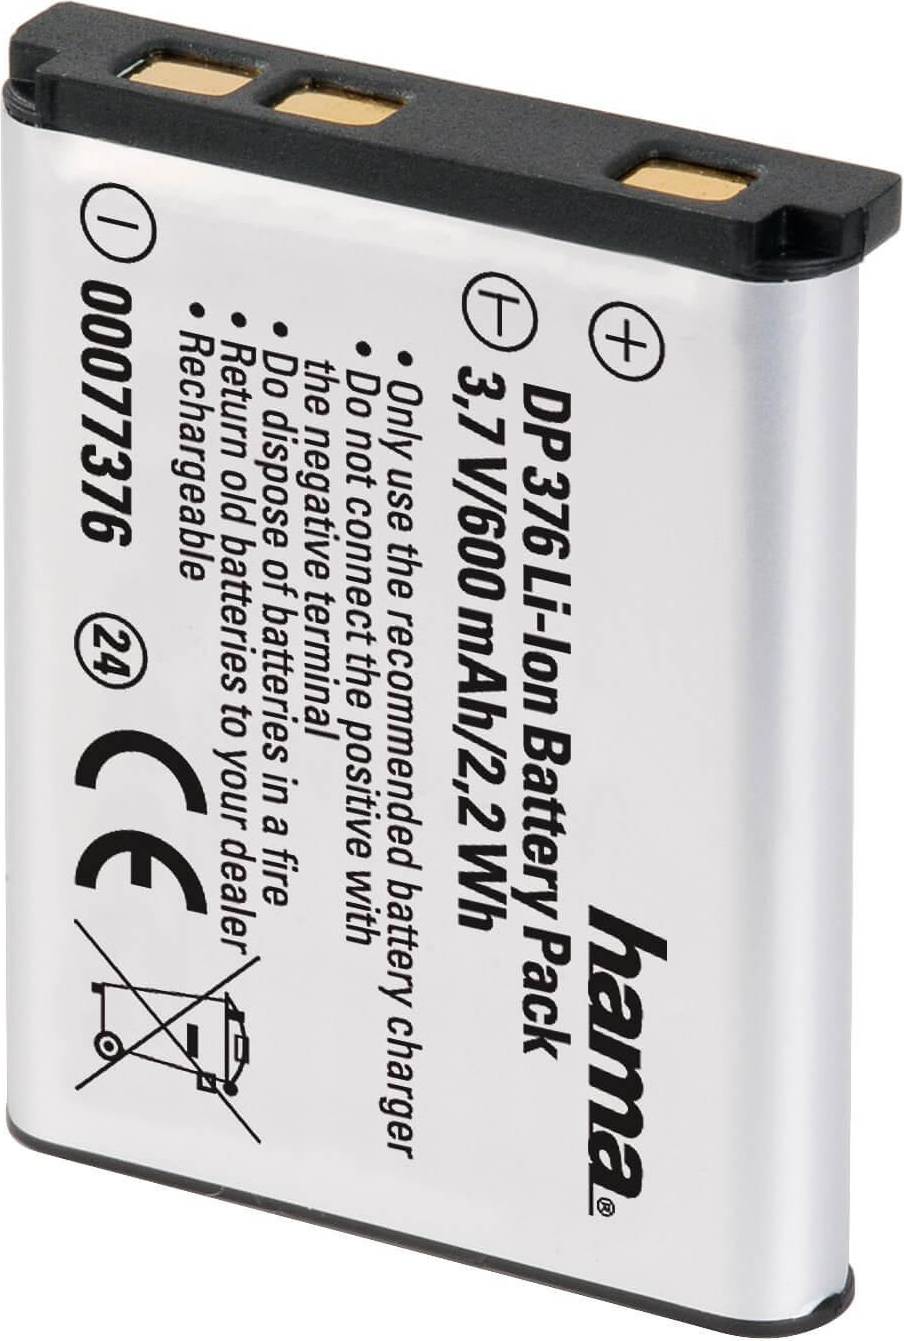 2x Battery Akku für Casio NP-80 NP-82 Dual USB Ladegerät mit LCD Display 